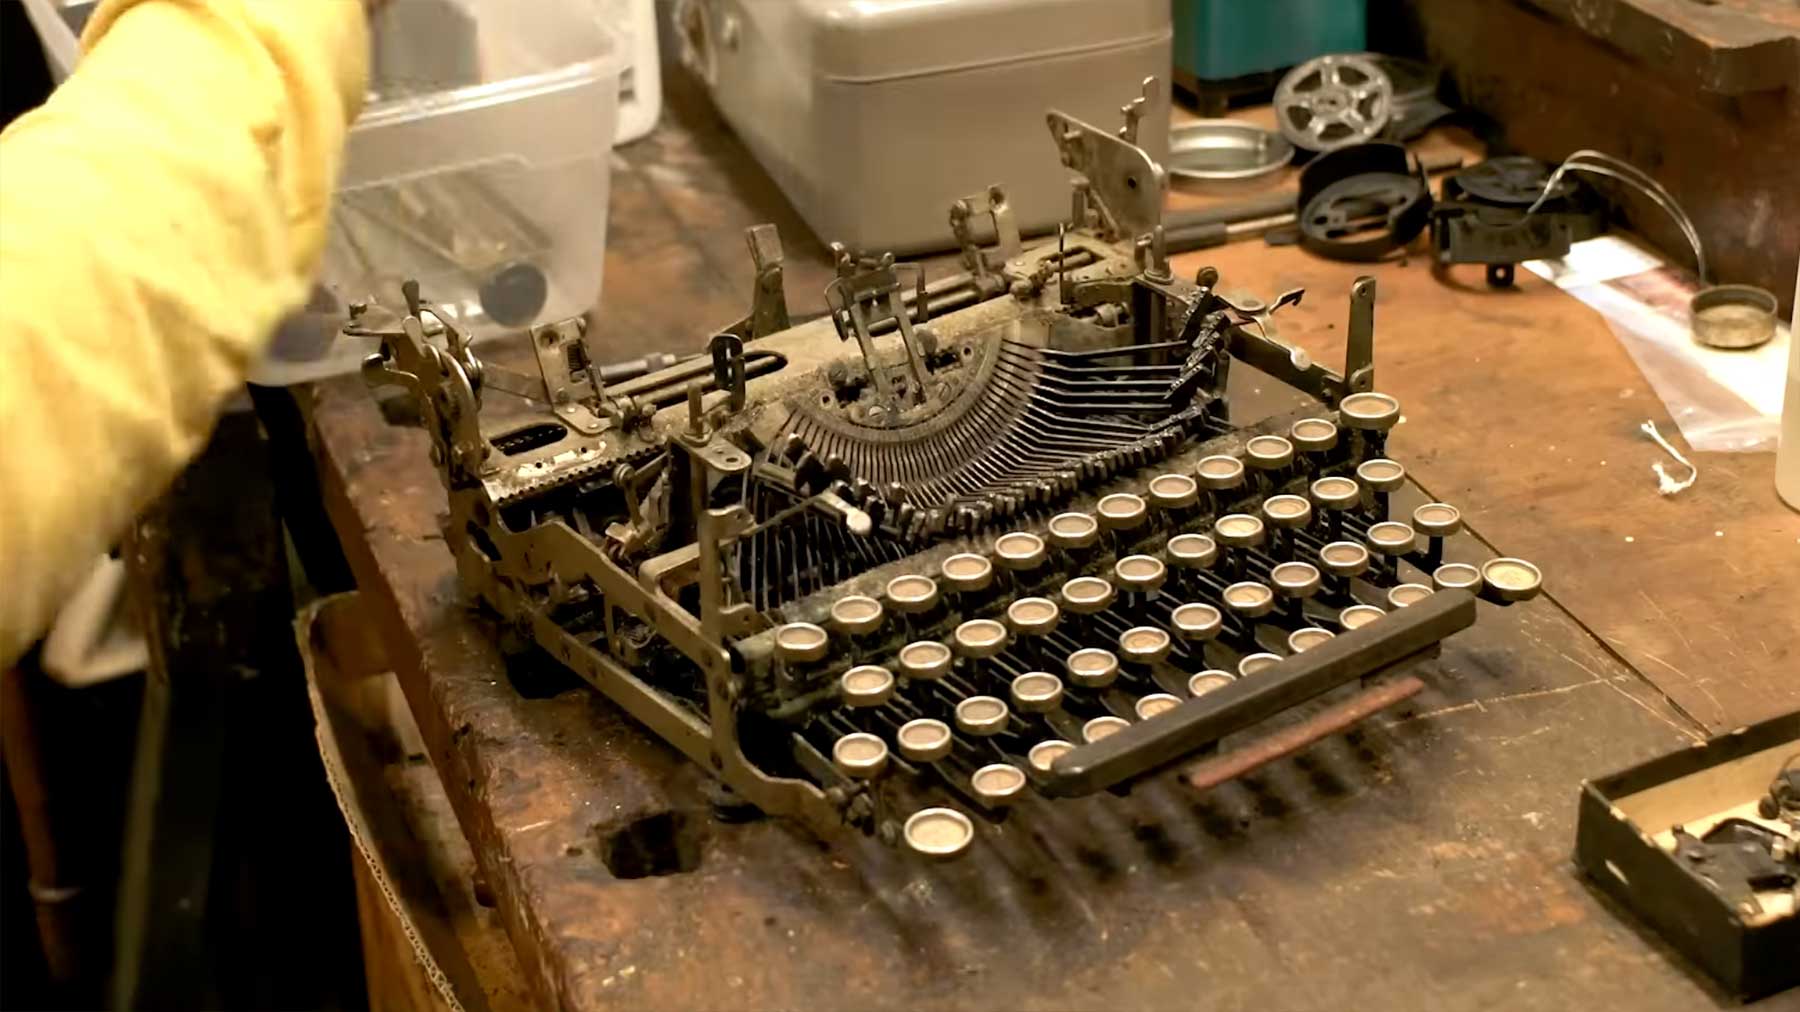 Restauration einer alten Schreibmaschine aus den 30er Jahren restauration-einer-alten-schreibmaschine-1930er-jahre 